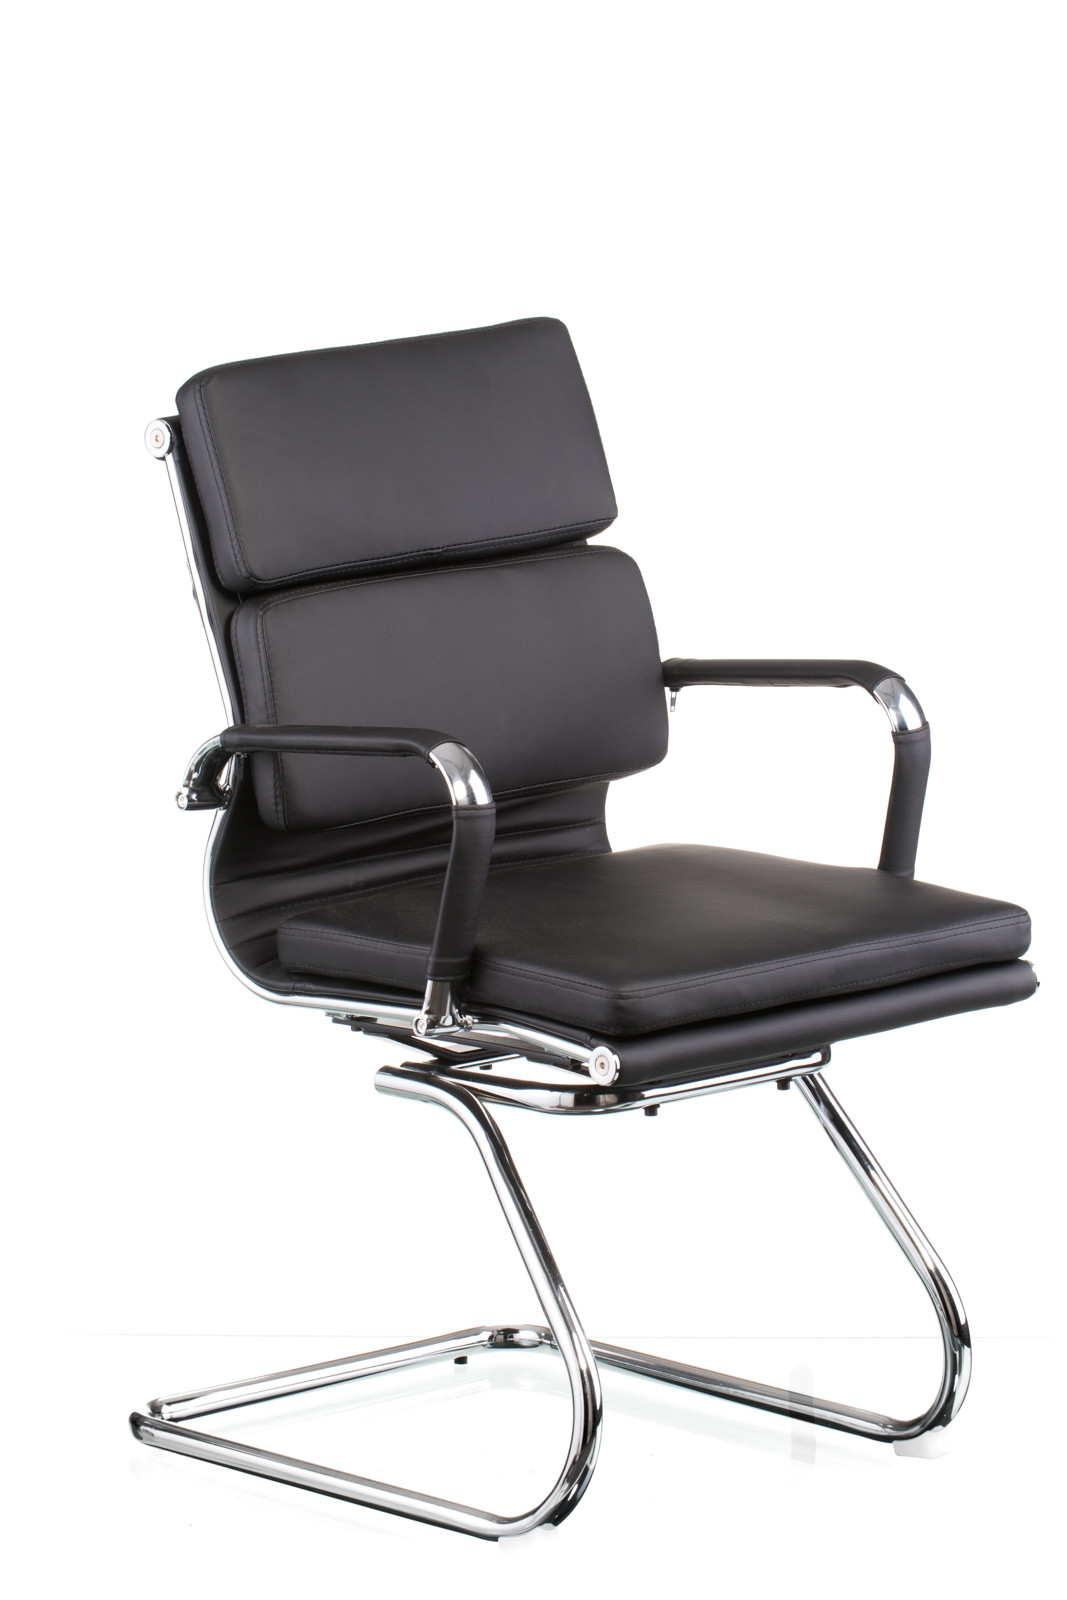 Кресло офисное TPRO- Solano 3 confеrеncе black E5920